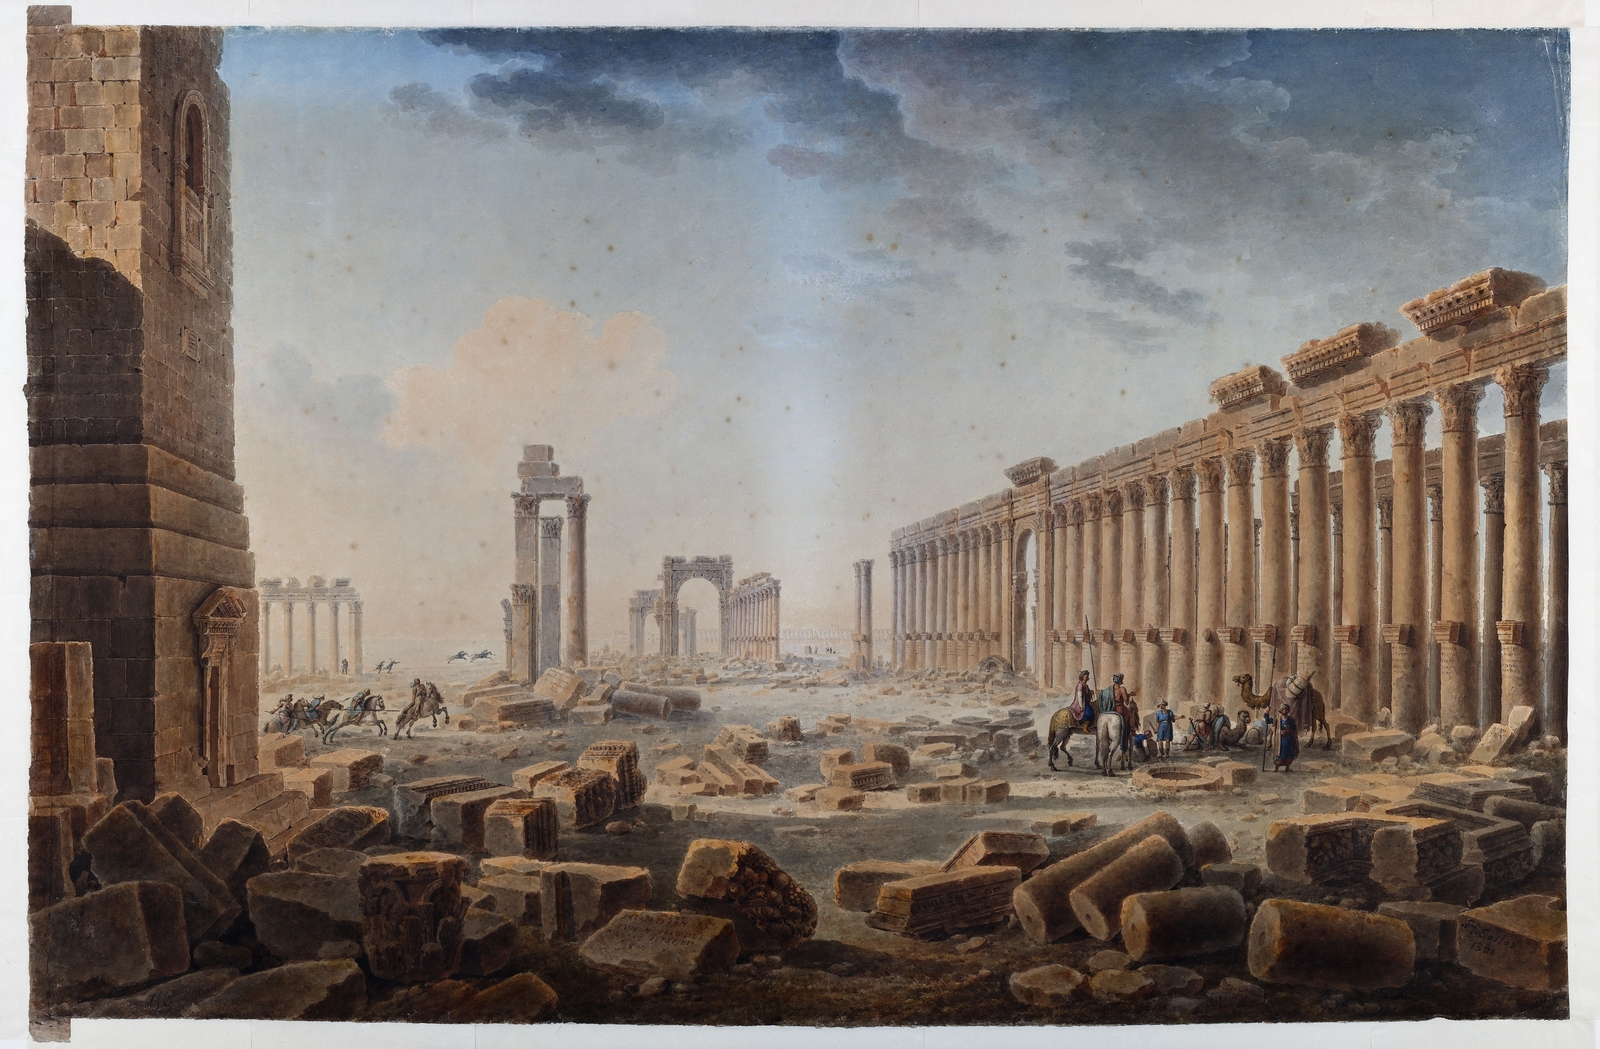 Les ruines de Palmyre, aquarelle